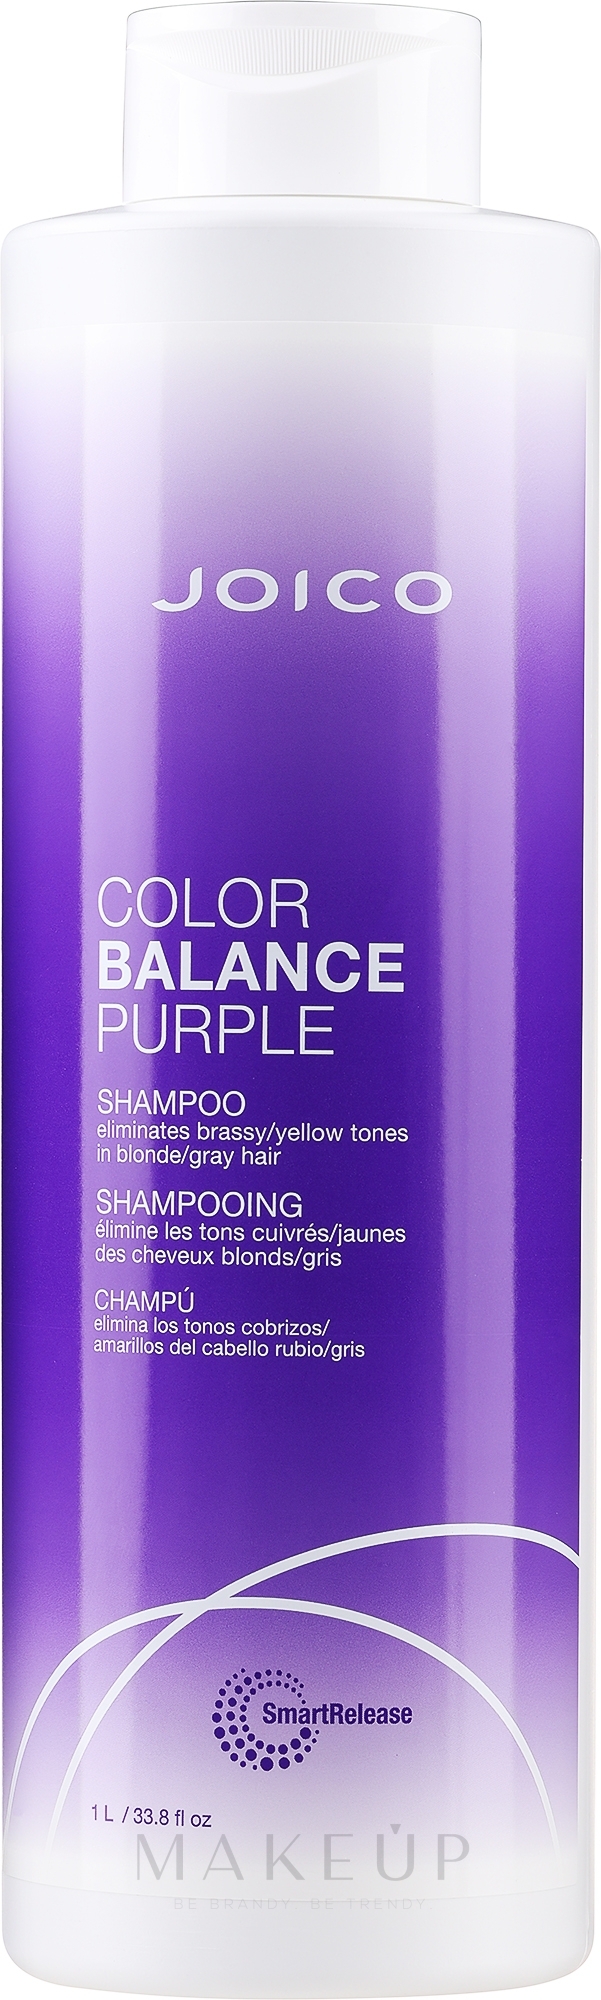 Shampoo für blondes und graues Haar - Joico Color Balance Purple Shampoo — Bild 1000 ml